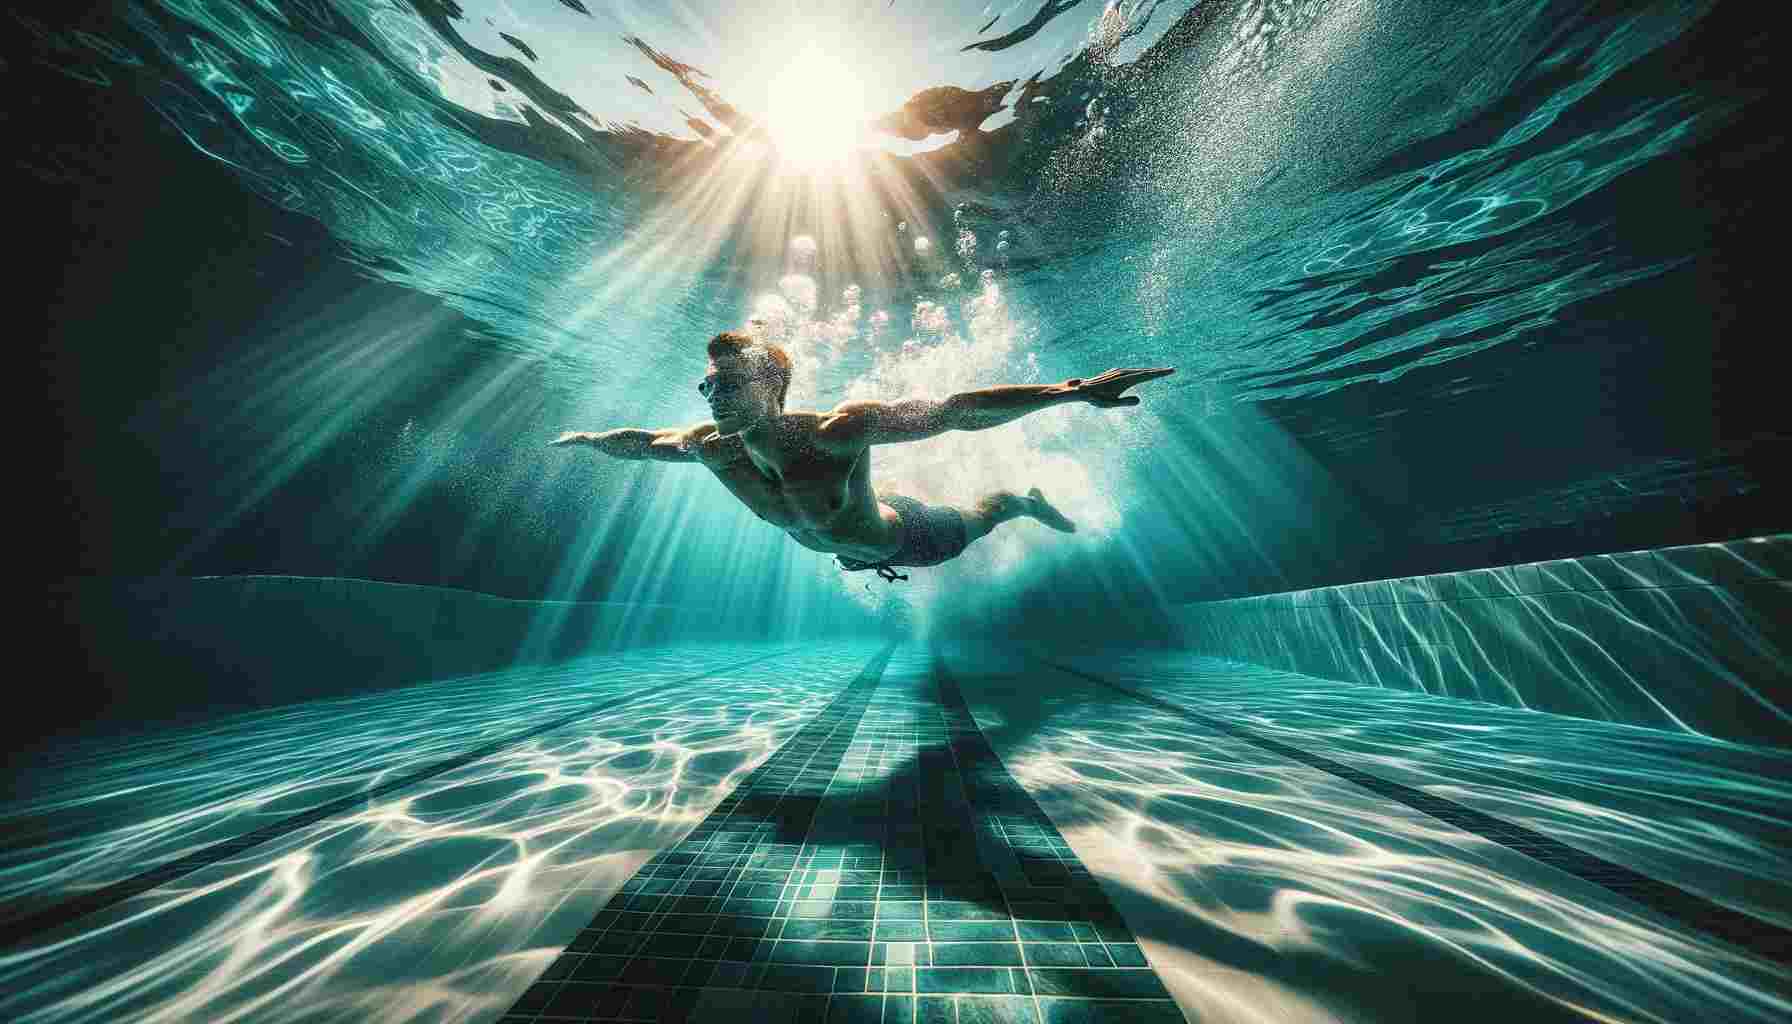 Dinamikus víz alatti jelenet, amely egy embert mutat, aki kecsesen úszik egy tiszta, türkizkék medencében. A napfény átszűrődik a vízen, mintákat hozva létre...